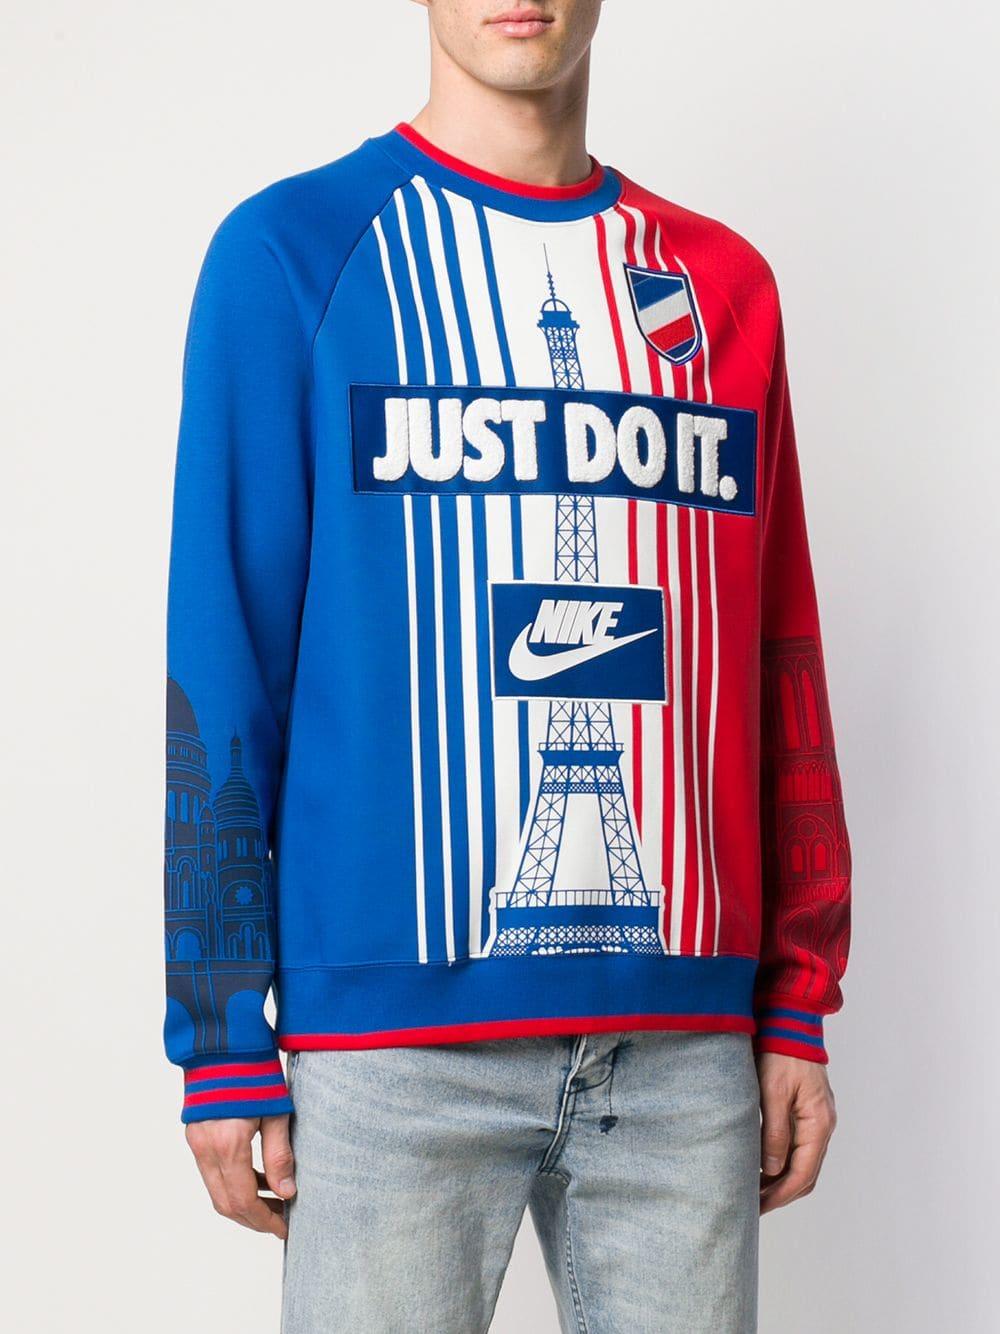 Tregua etiqueta a tiempo Nike City Pack Paris Cotton Blend Sweatshirt in Blue for Men | Lyst